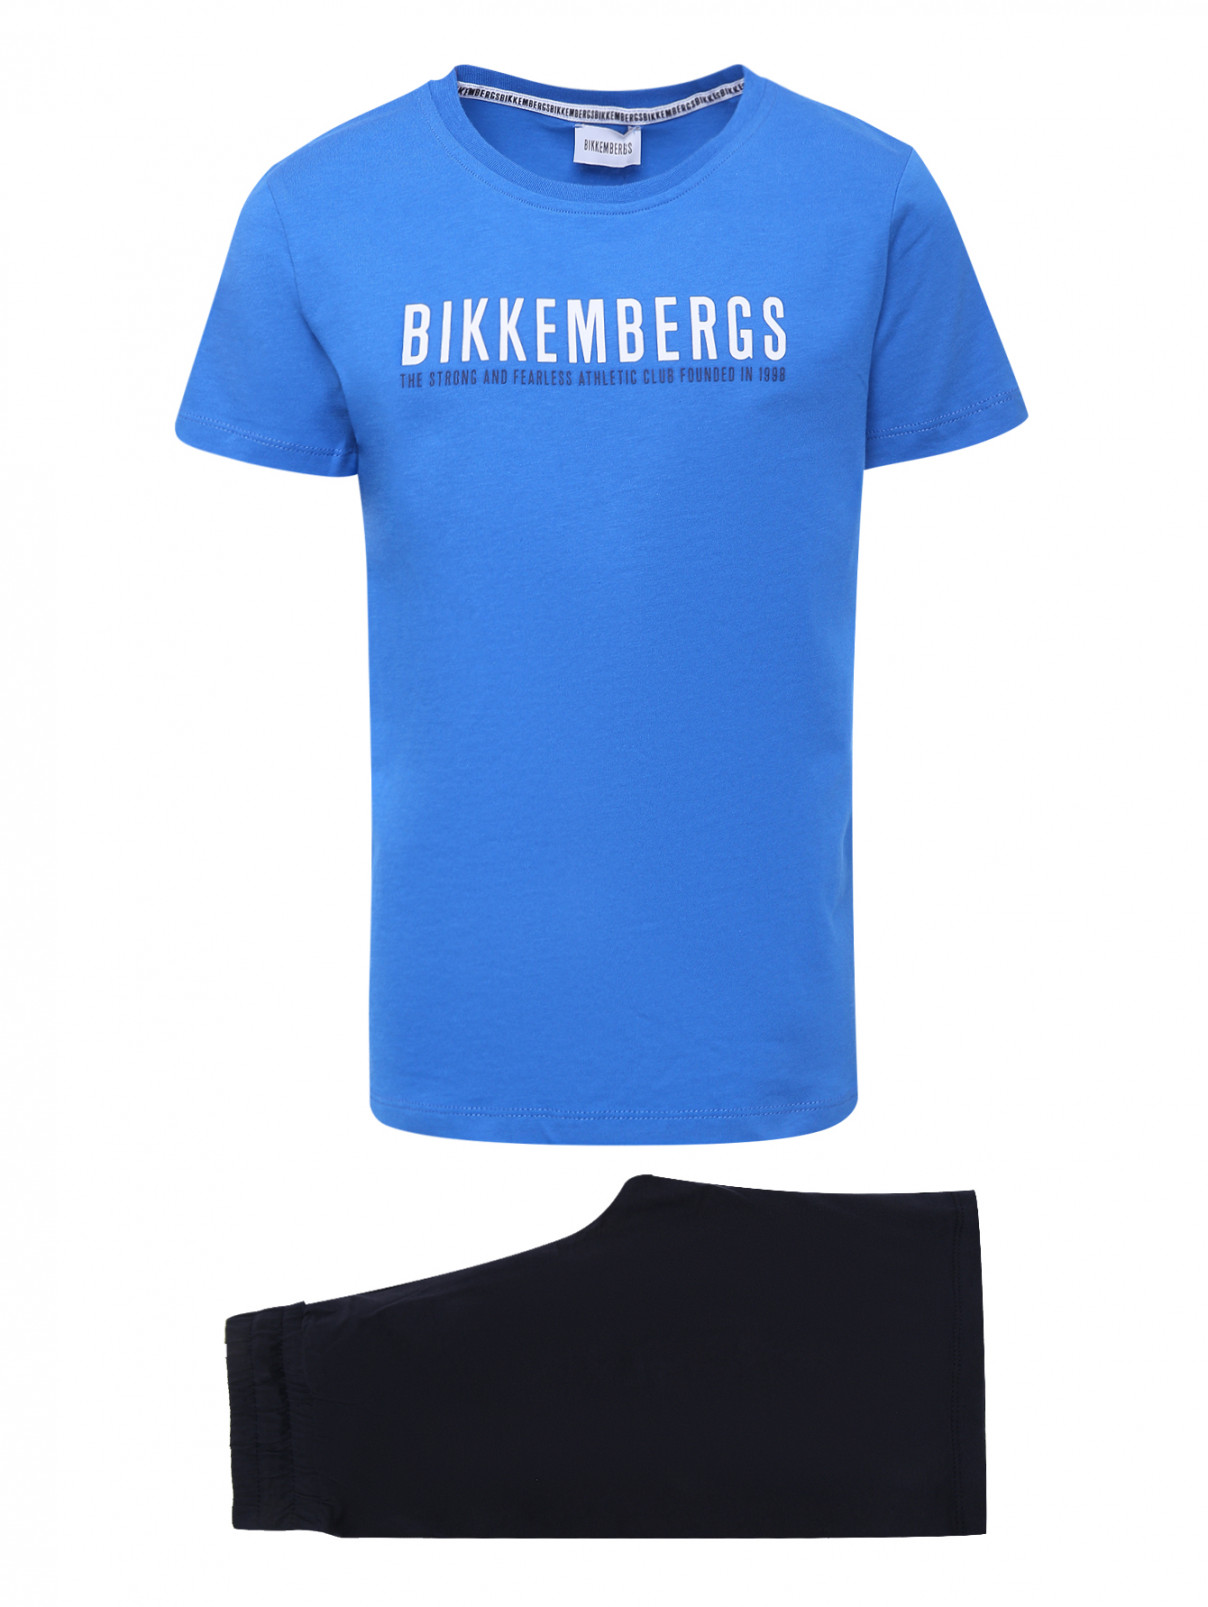 Костюм из хлопка с принтом и коротким рукавом Bikkembergs  –  Общий вид  – Цвет:  Синий